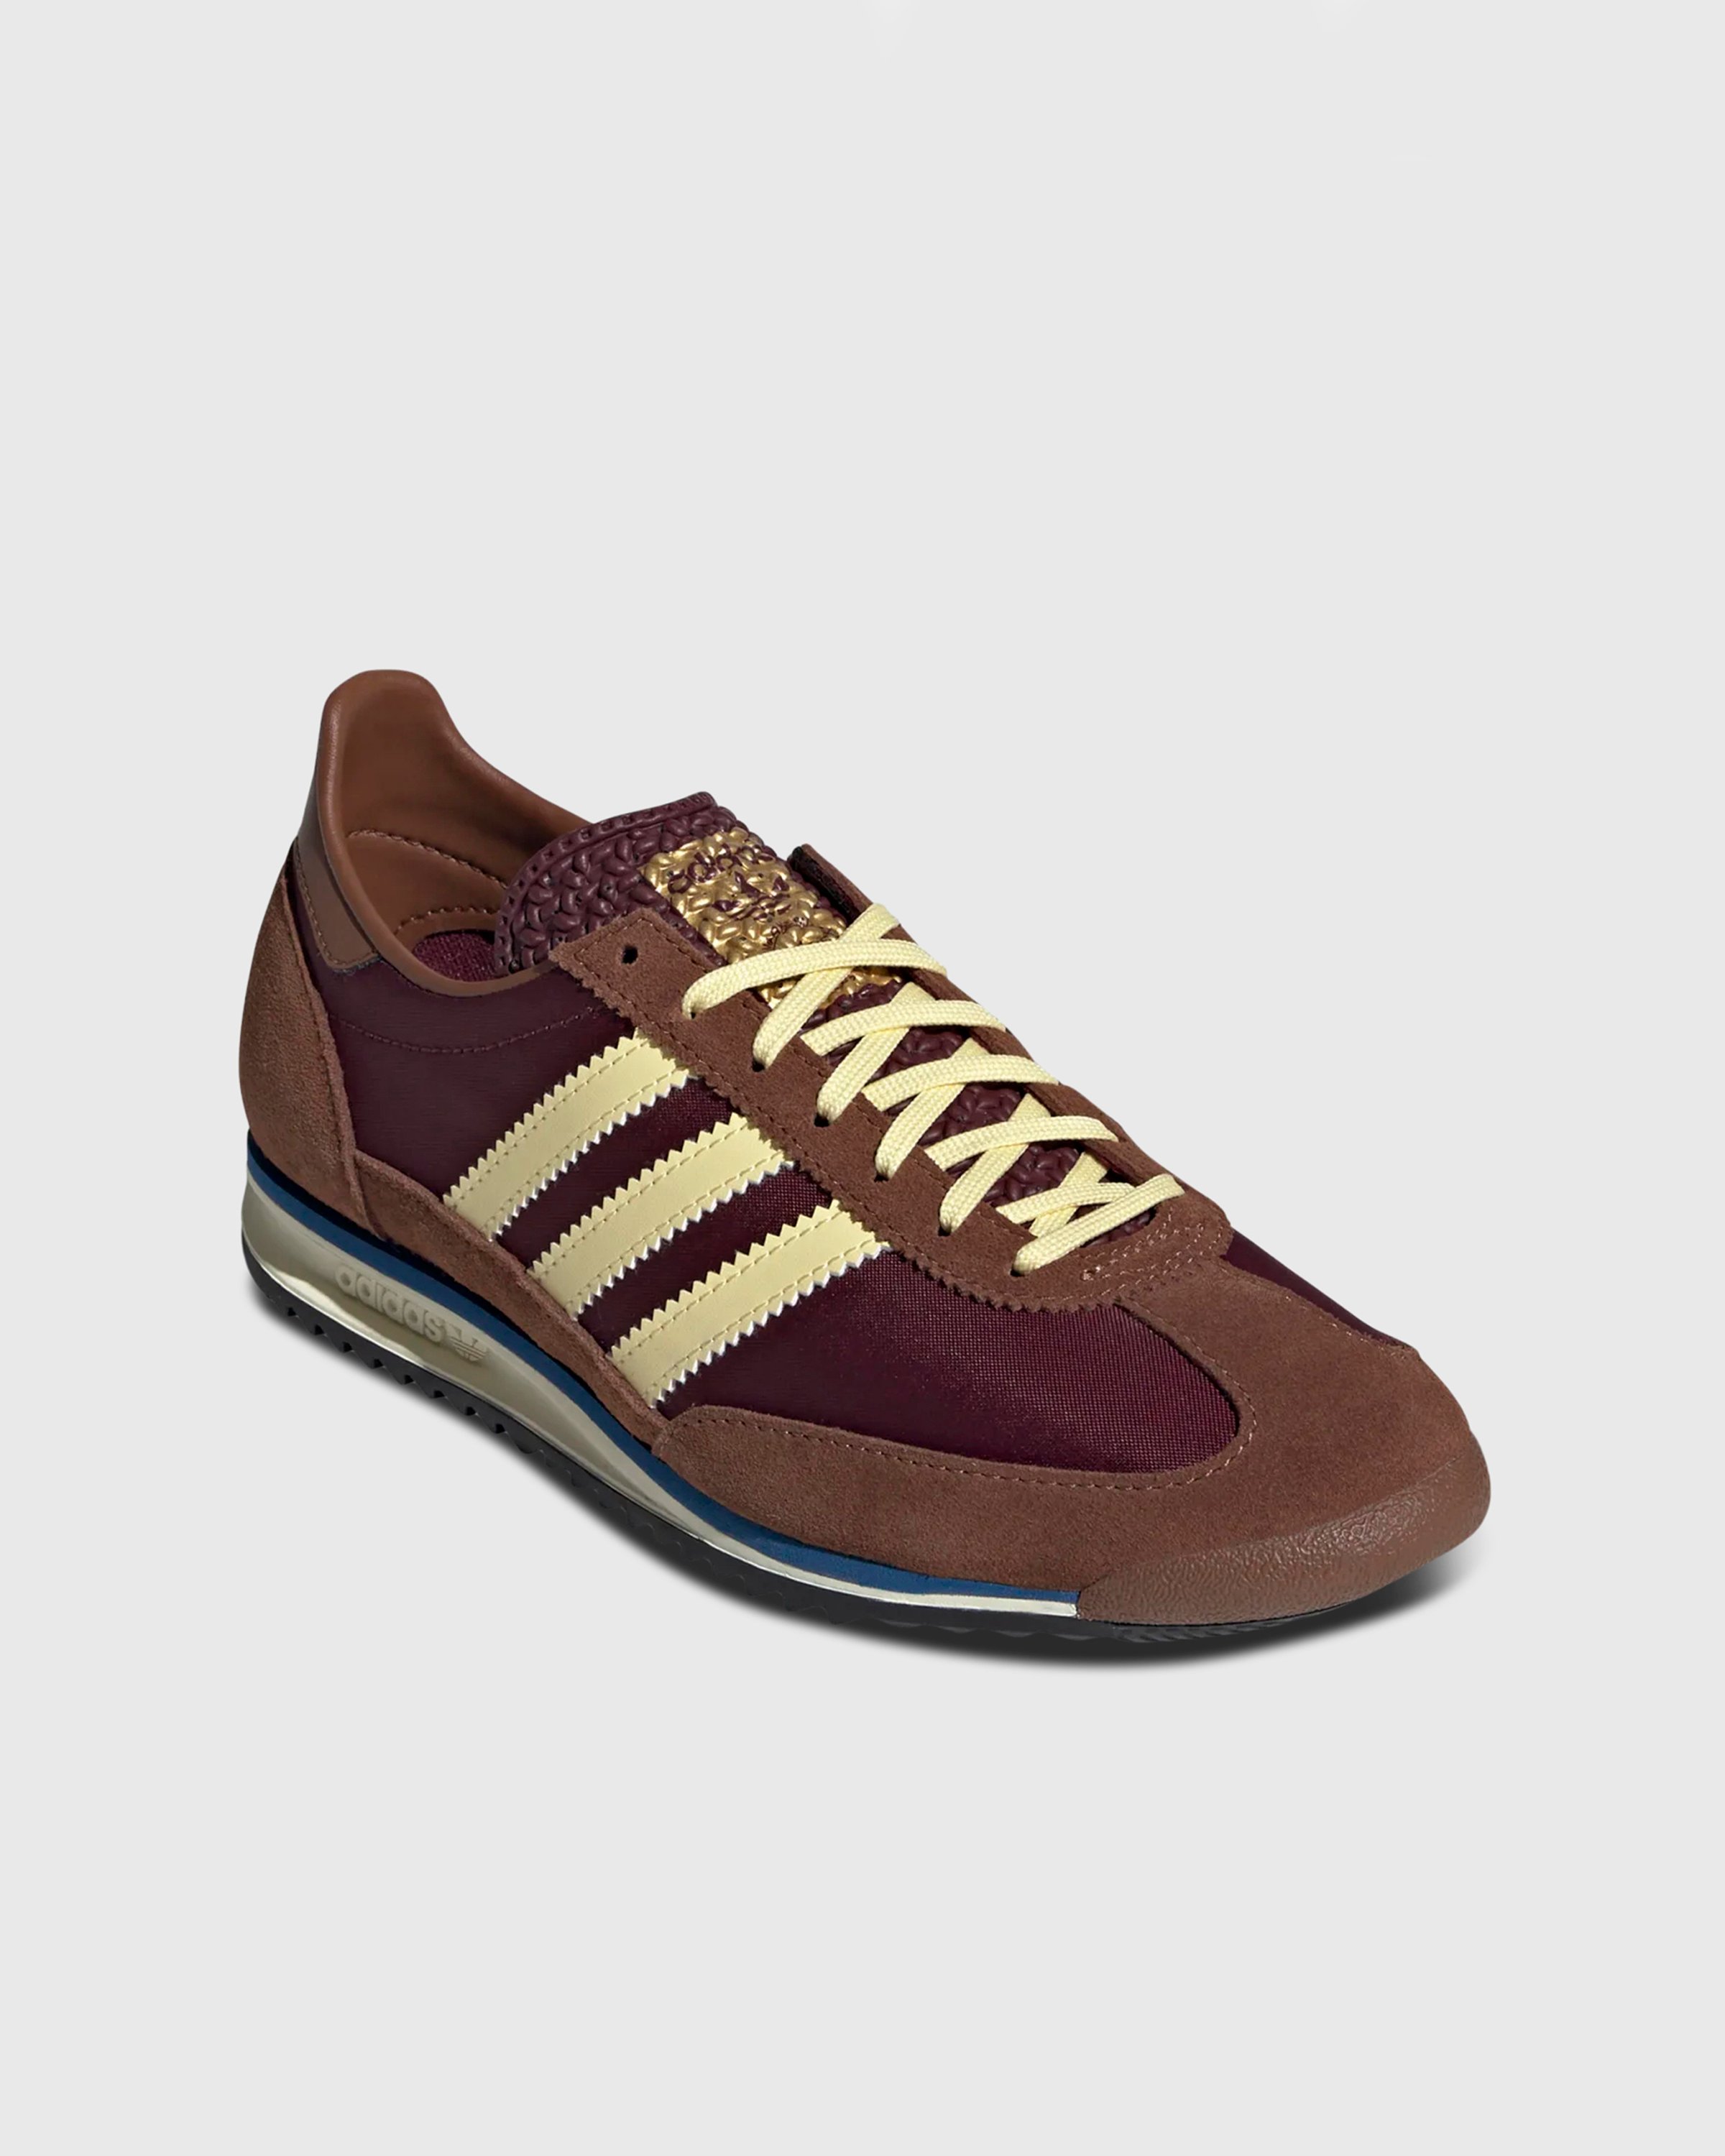 Adidas - SL 72 OG W          MAROON/ALMYEL/PREBRN - Footwear - Brown - Image 3